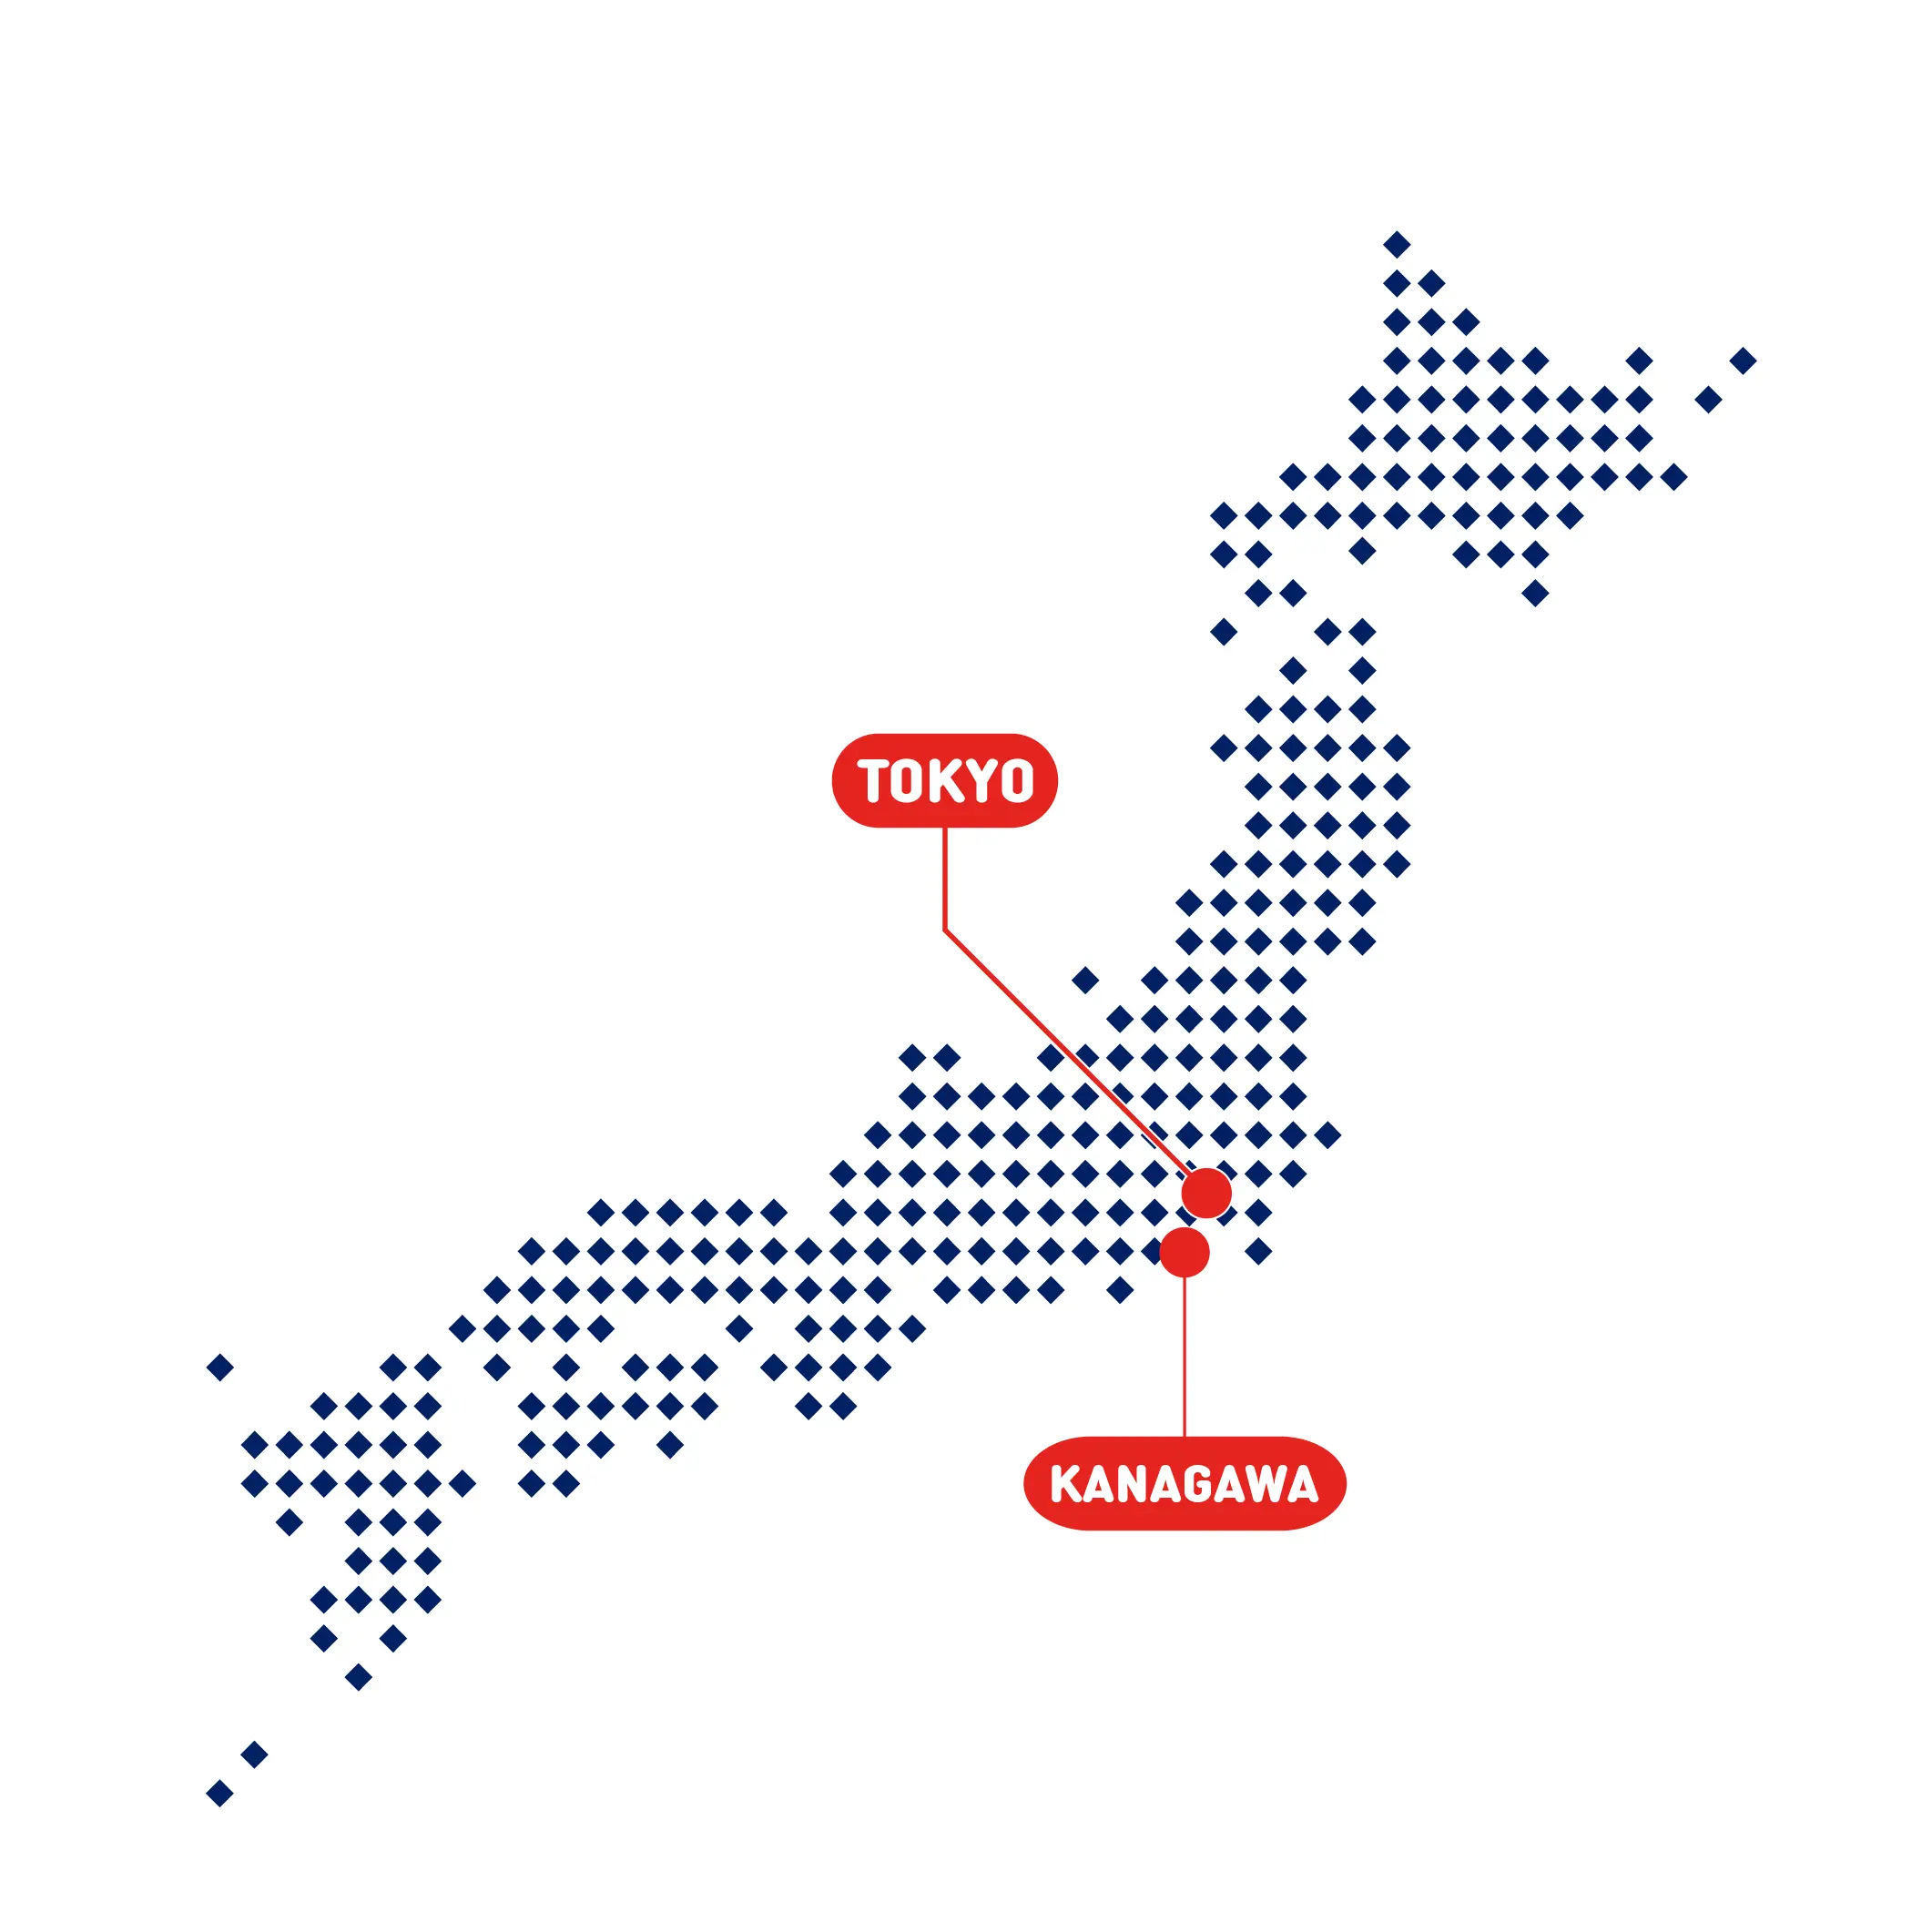 リノベーションの施工エリア 神奈川県と東京都の全域